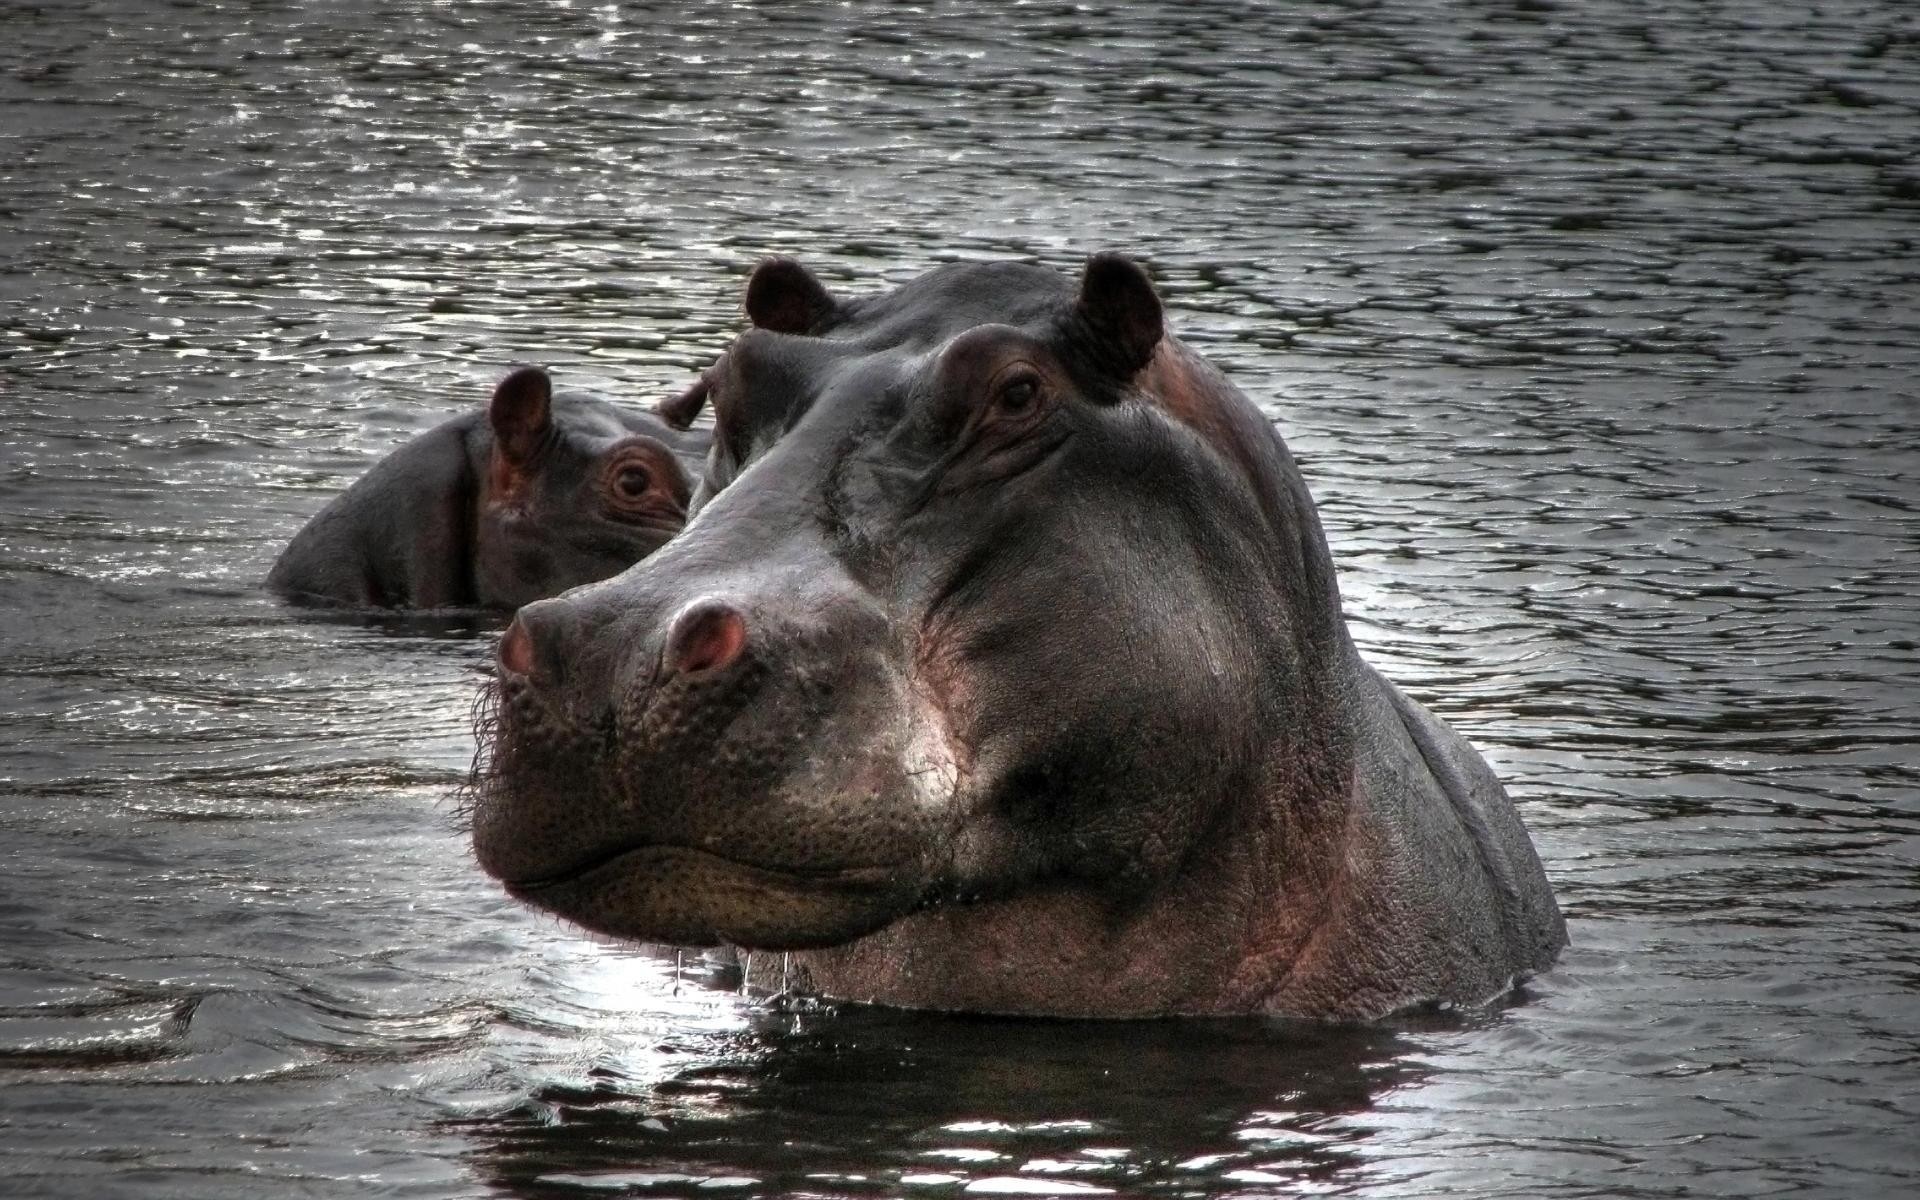 animals mammal water hippopotamus wildlife river animal one nature